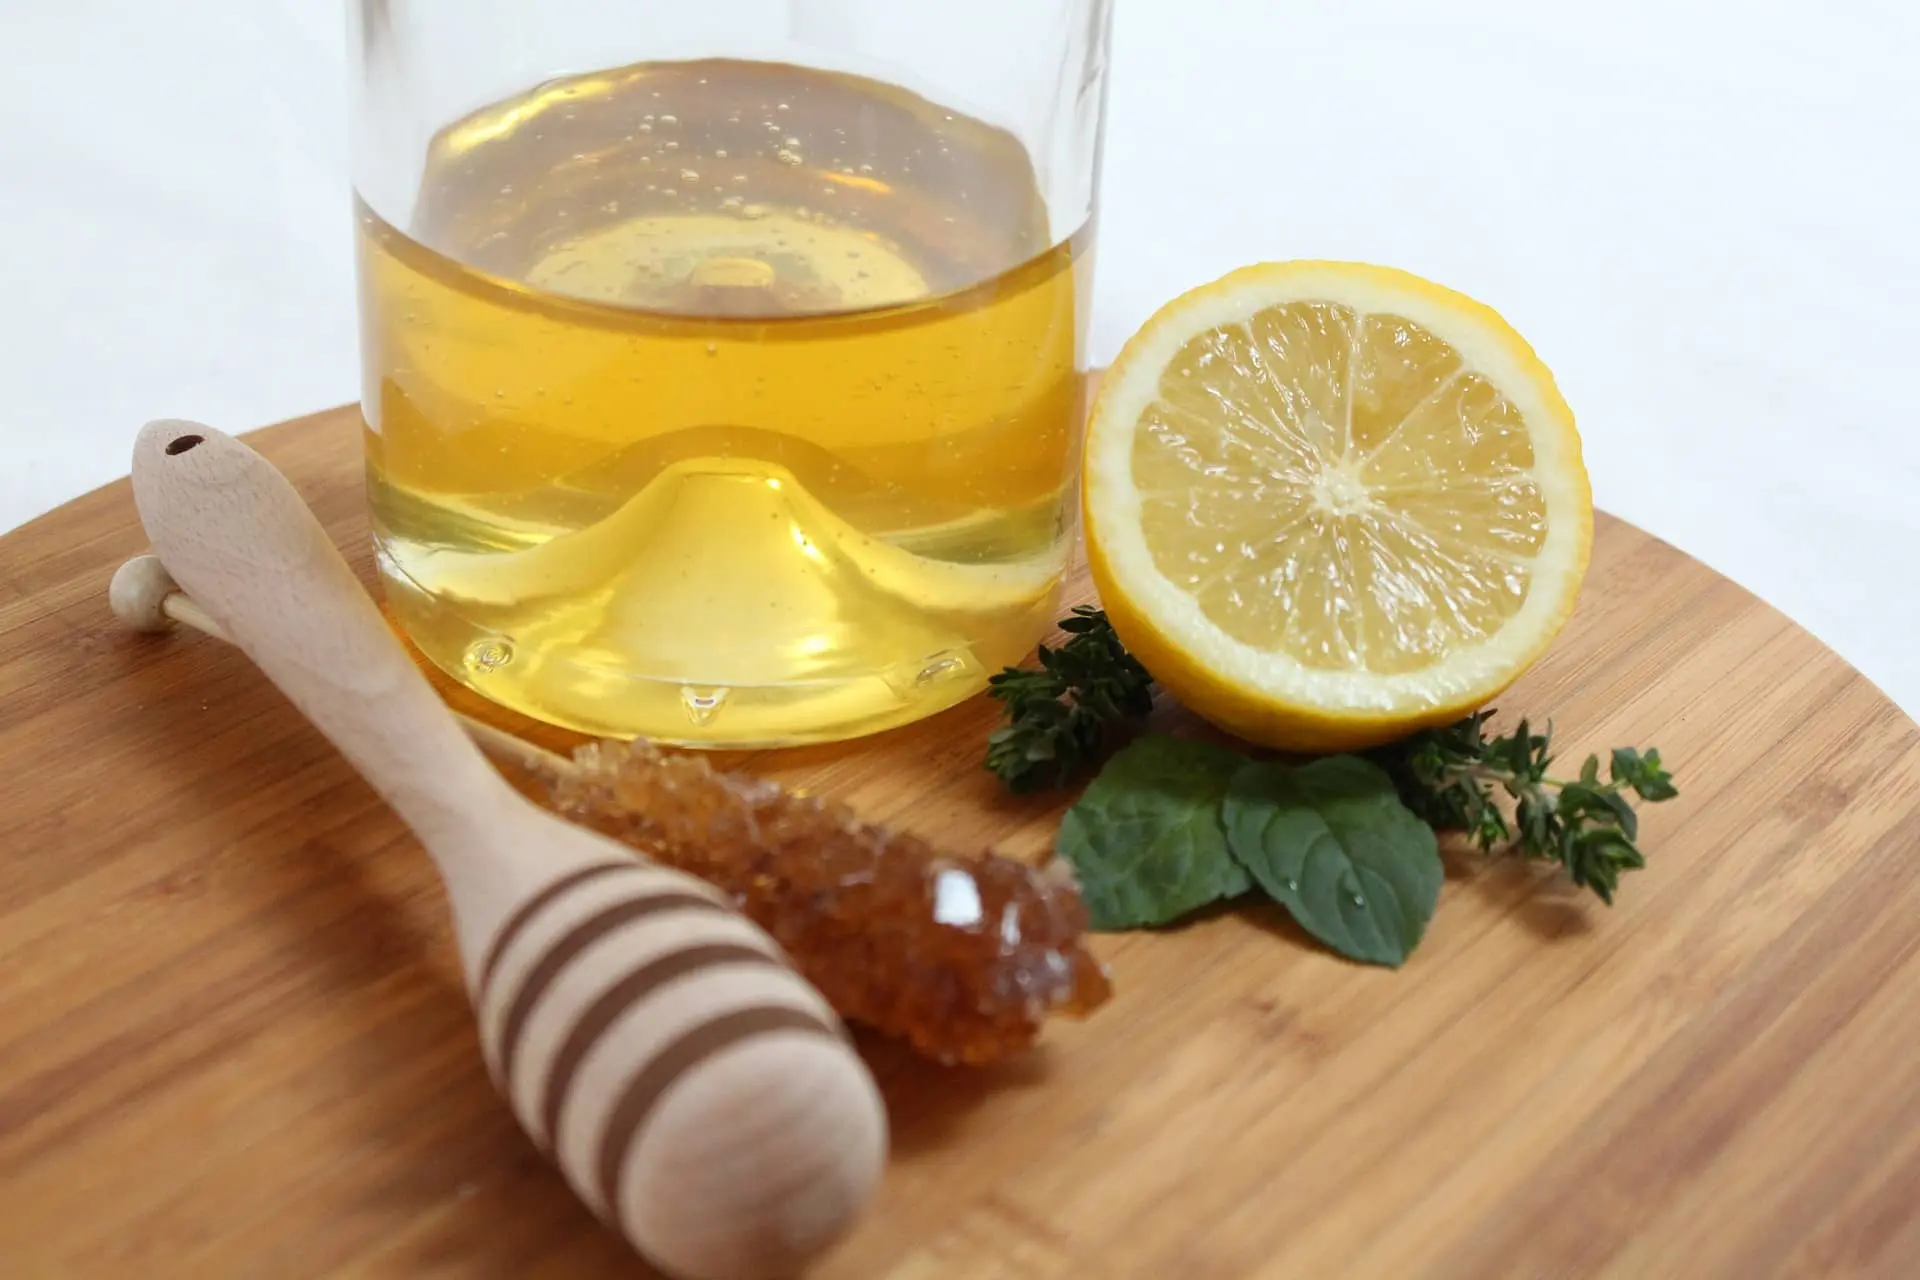 درمان سرماخوردگی با عسل طبیعی